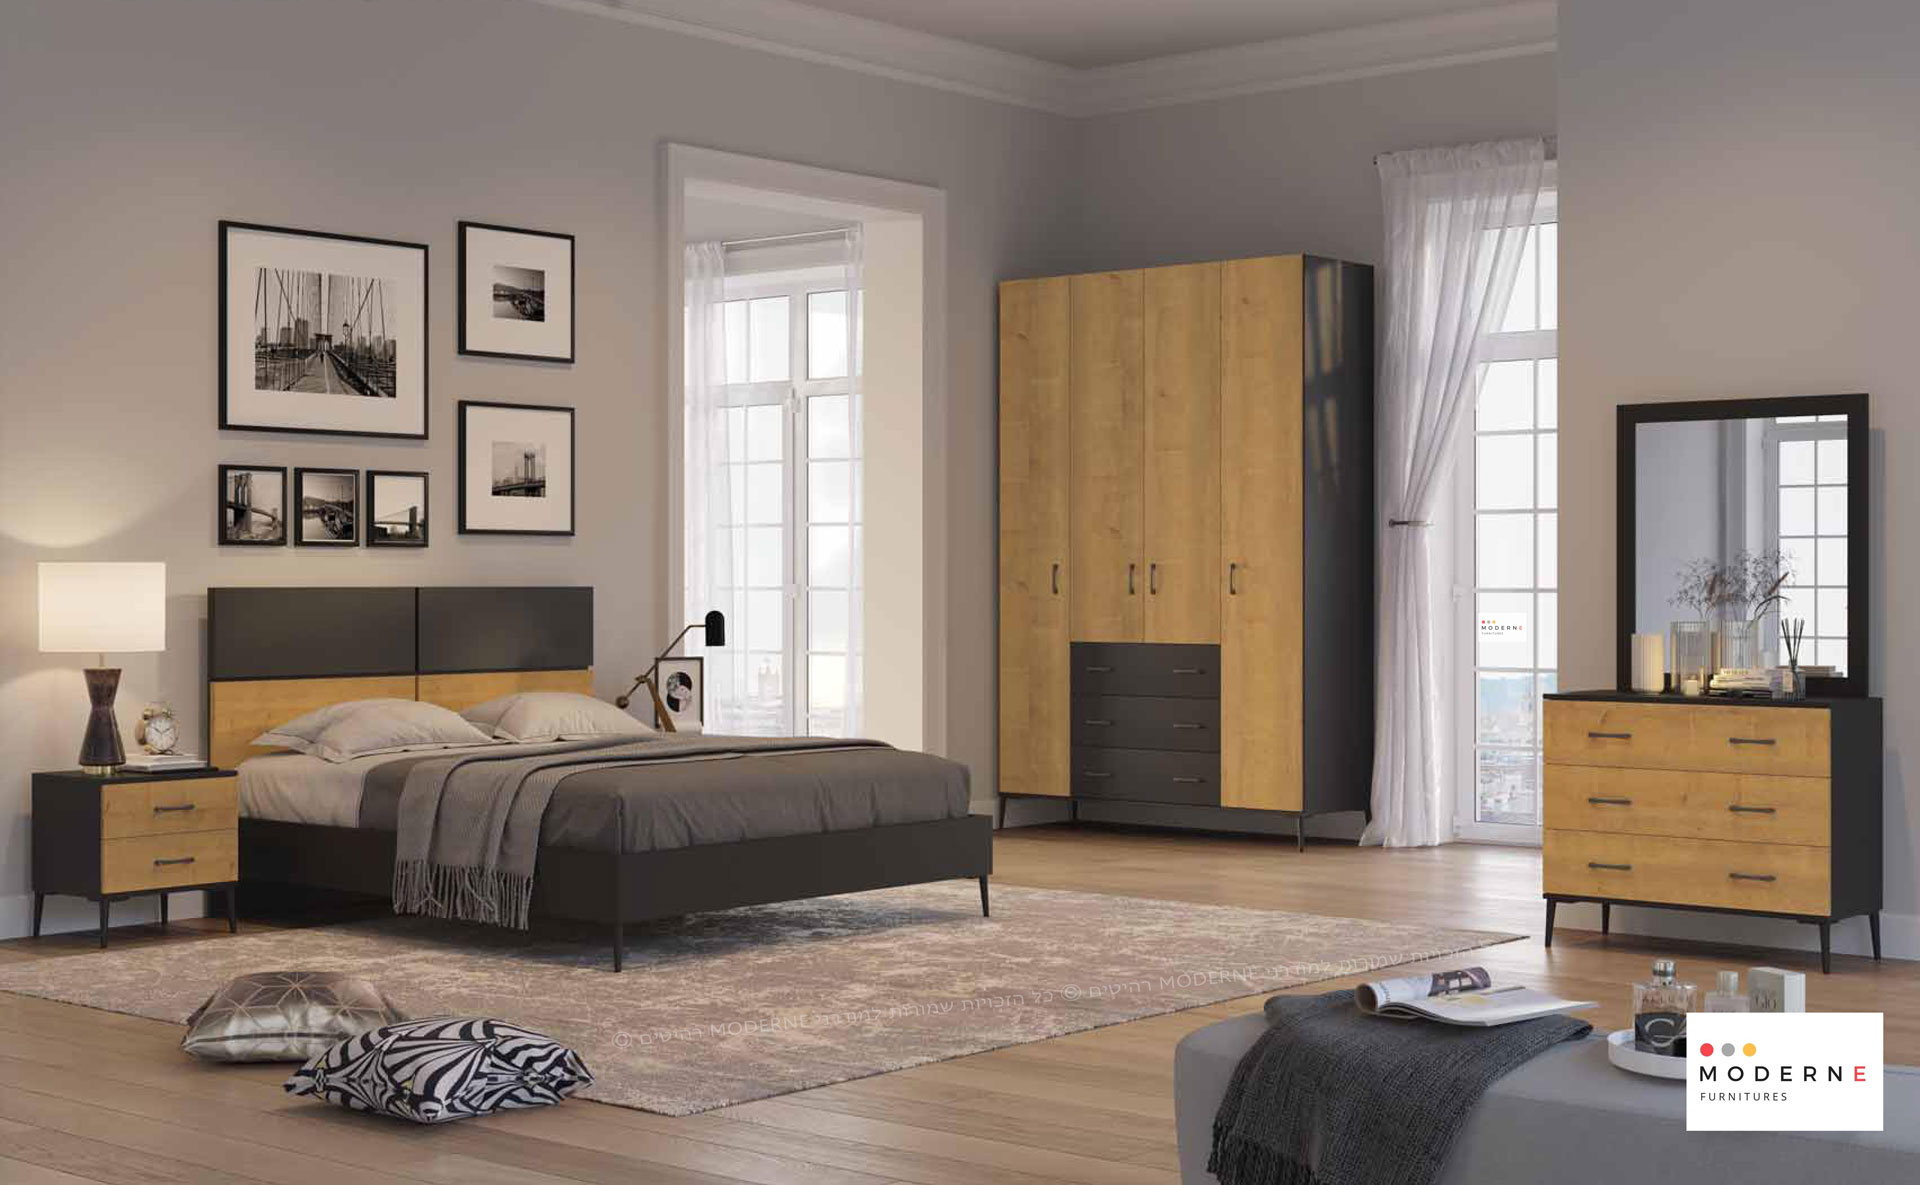 חדר שינה קומפלט דגם מאליבו ראש המיטה בשילוב צבעים ,החדר בצבע שחור בשילוב אלון עם רגלי מתכת שחורות ,נמצא באתר מודרני moderne.co.il